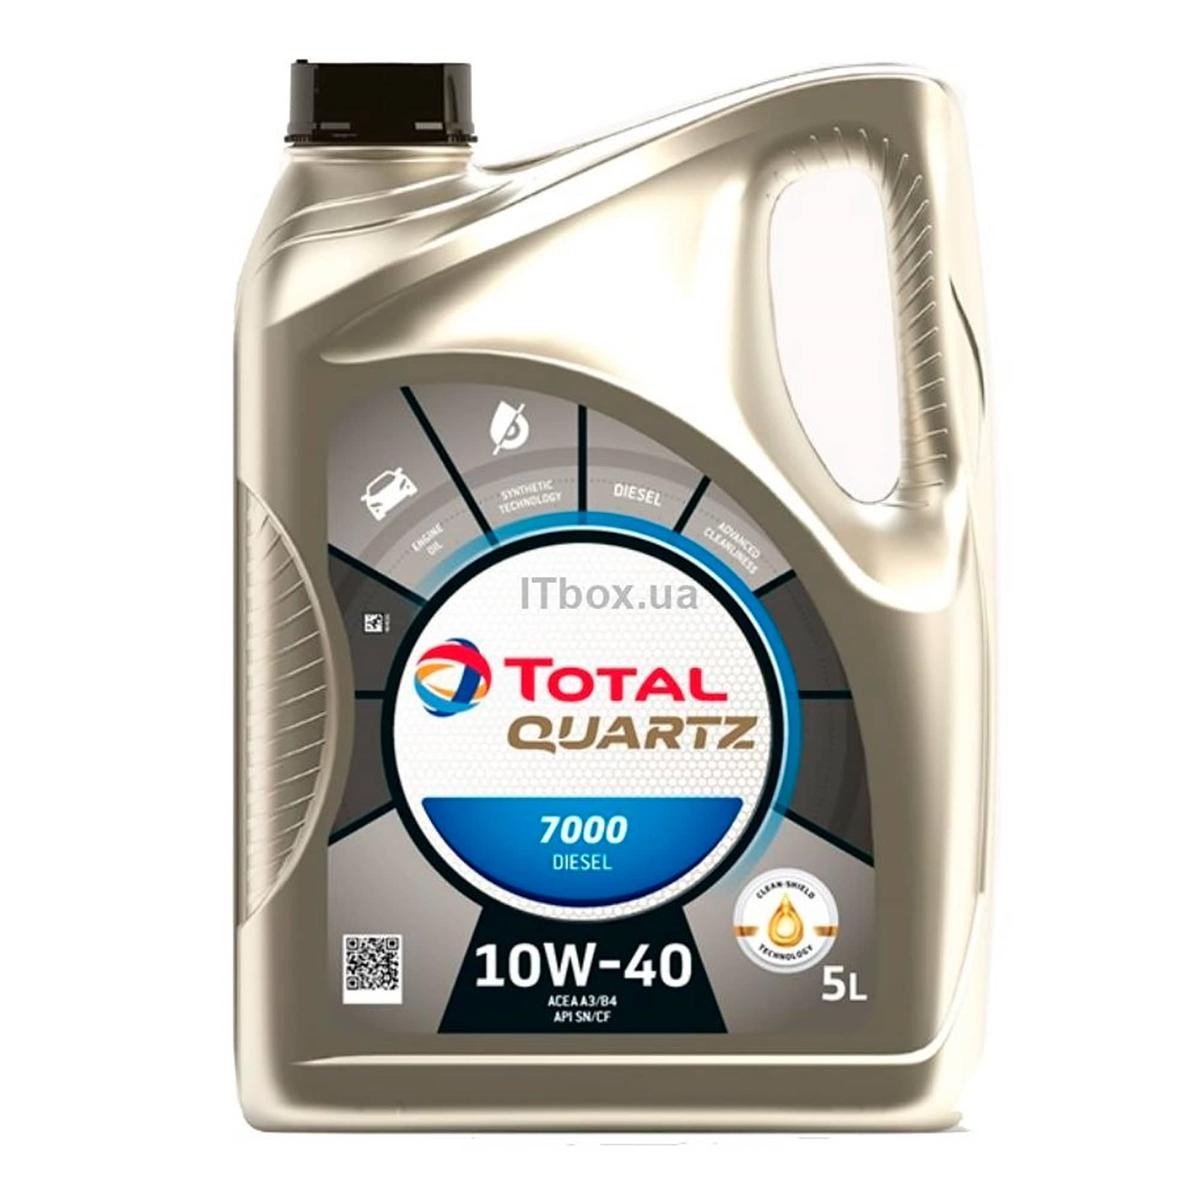 TOTAL Quartz, 7000 Diesel 2202844 Engine oil 10W-40, 5l, Part Synthetic Oil